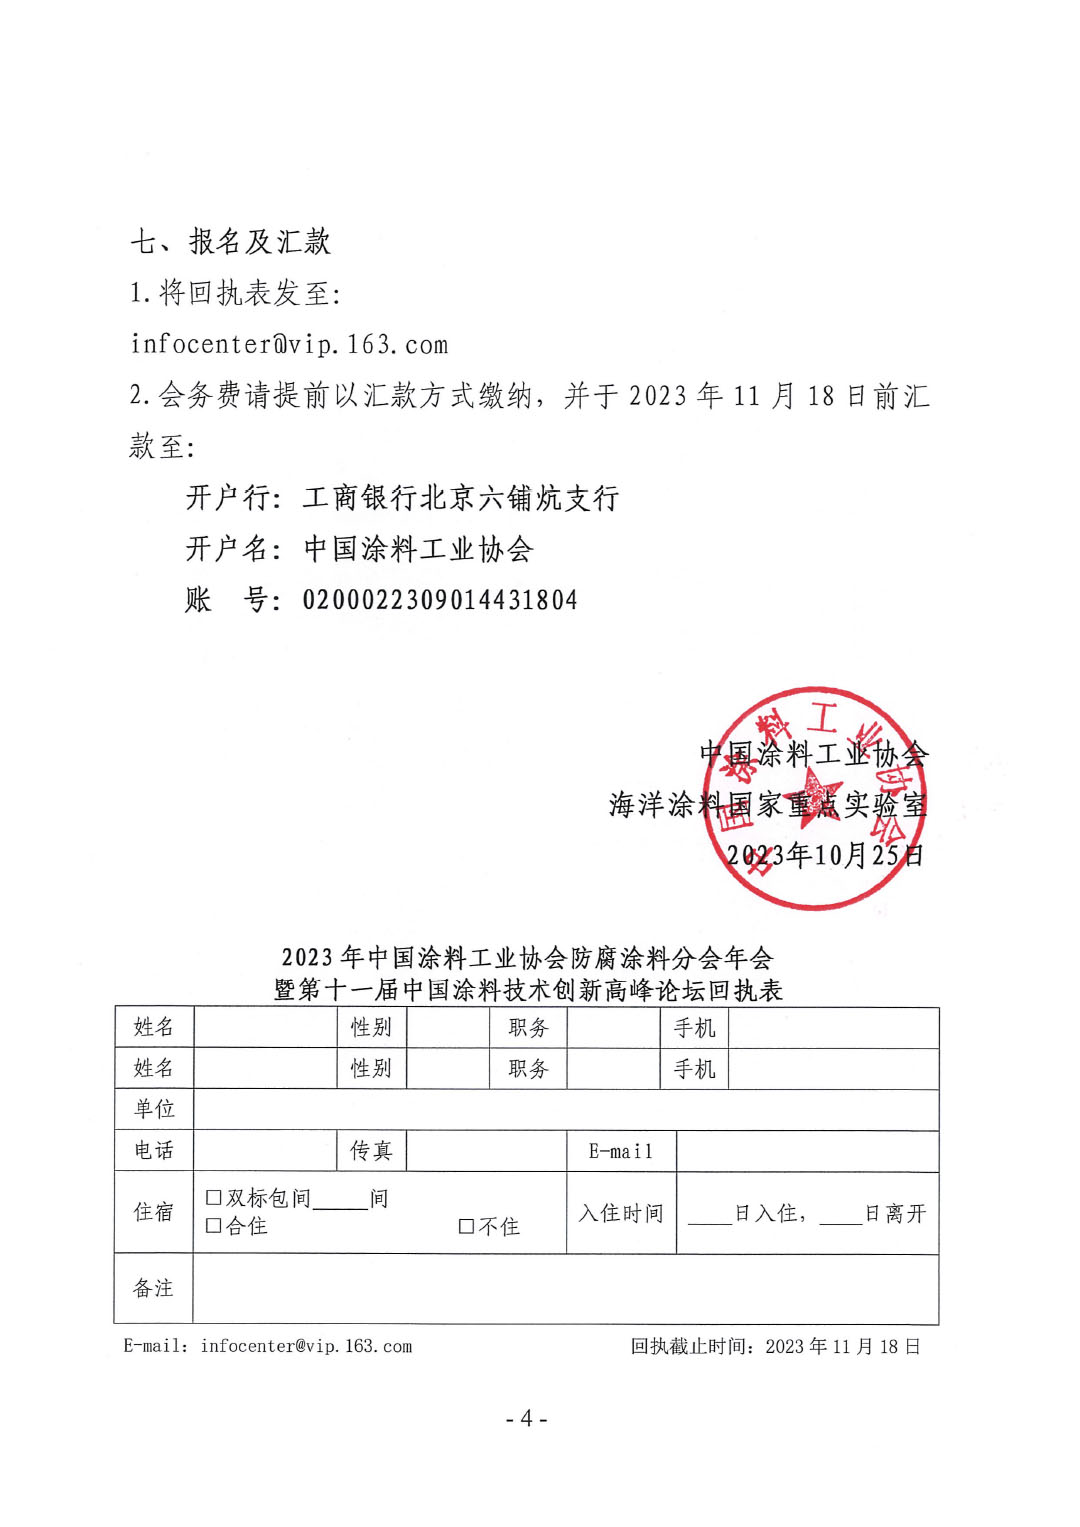 2023年中国涂料工业协会防腐涂料分会年会预通知20231025(1)-4